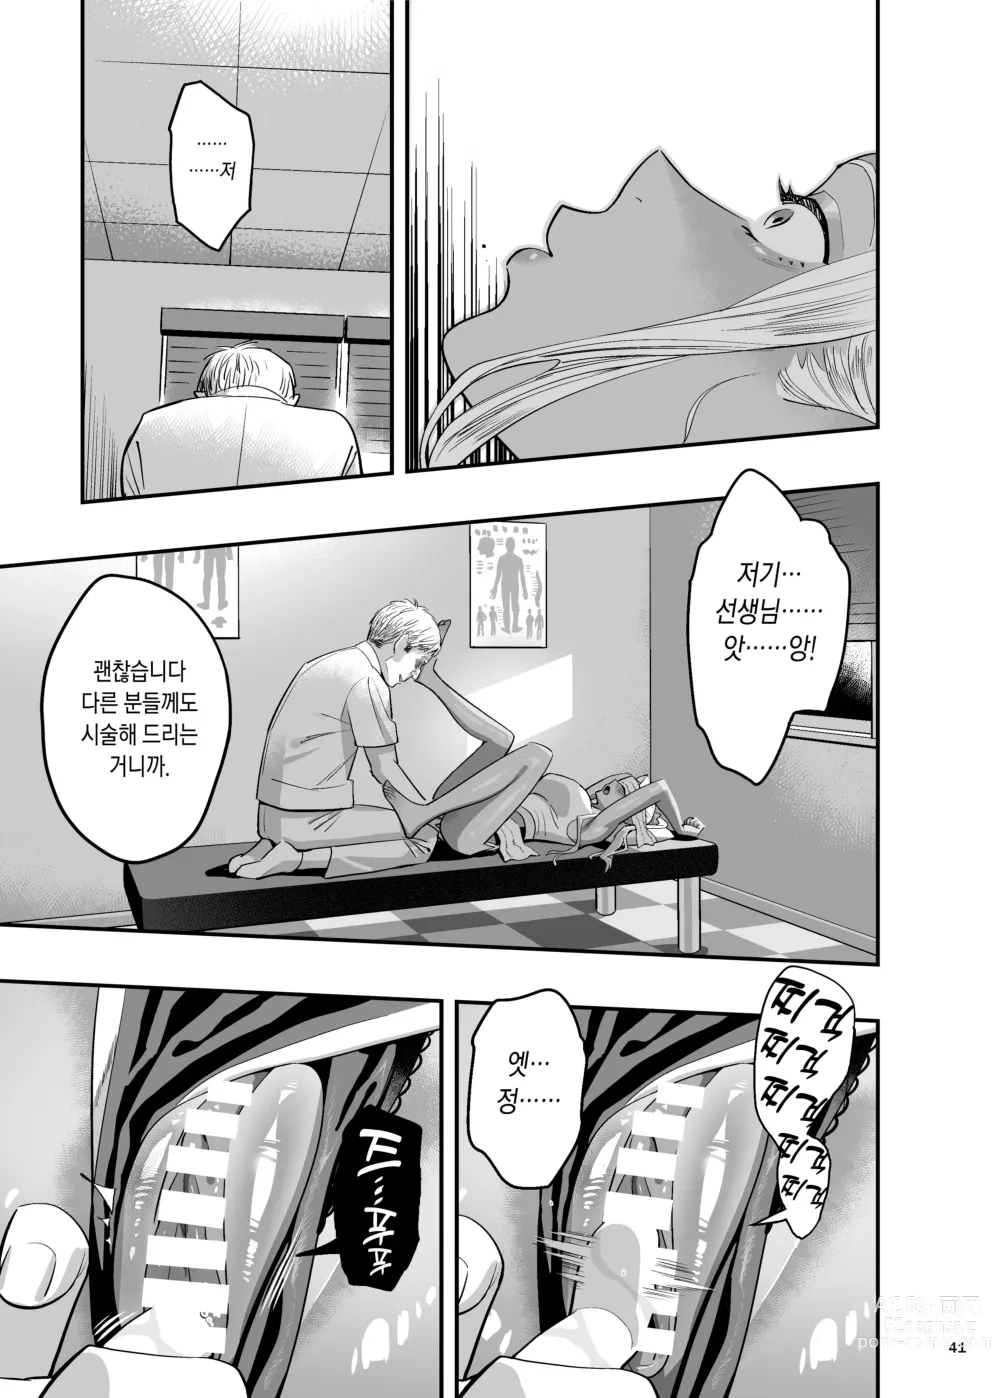 Page 38 of doujinshi Watashi ga Saki ni Suki datta no ni Seitai.